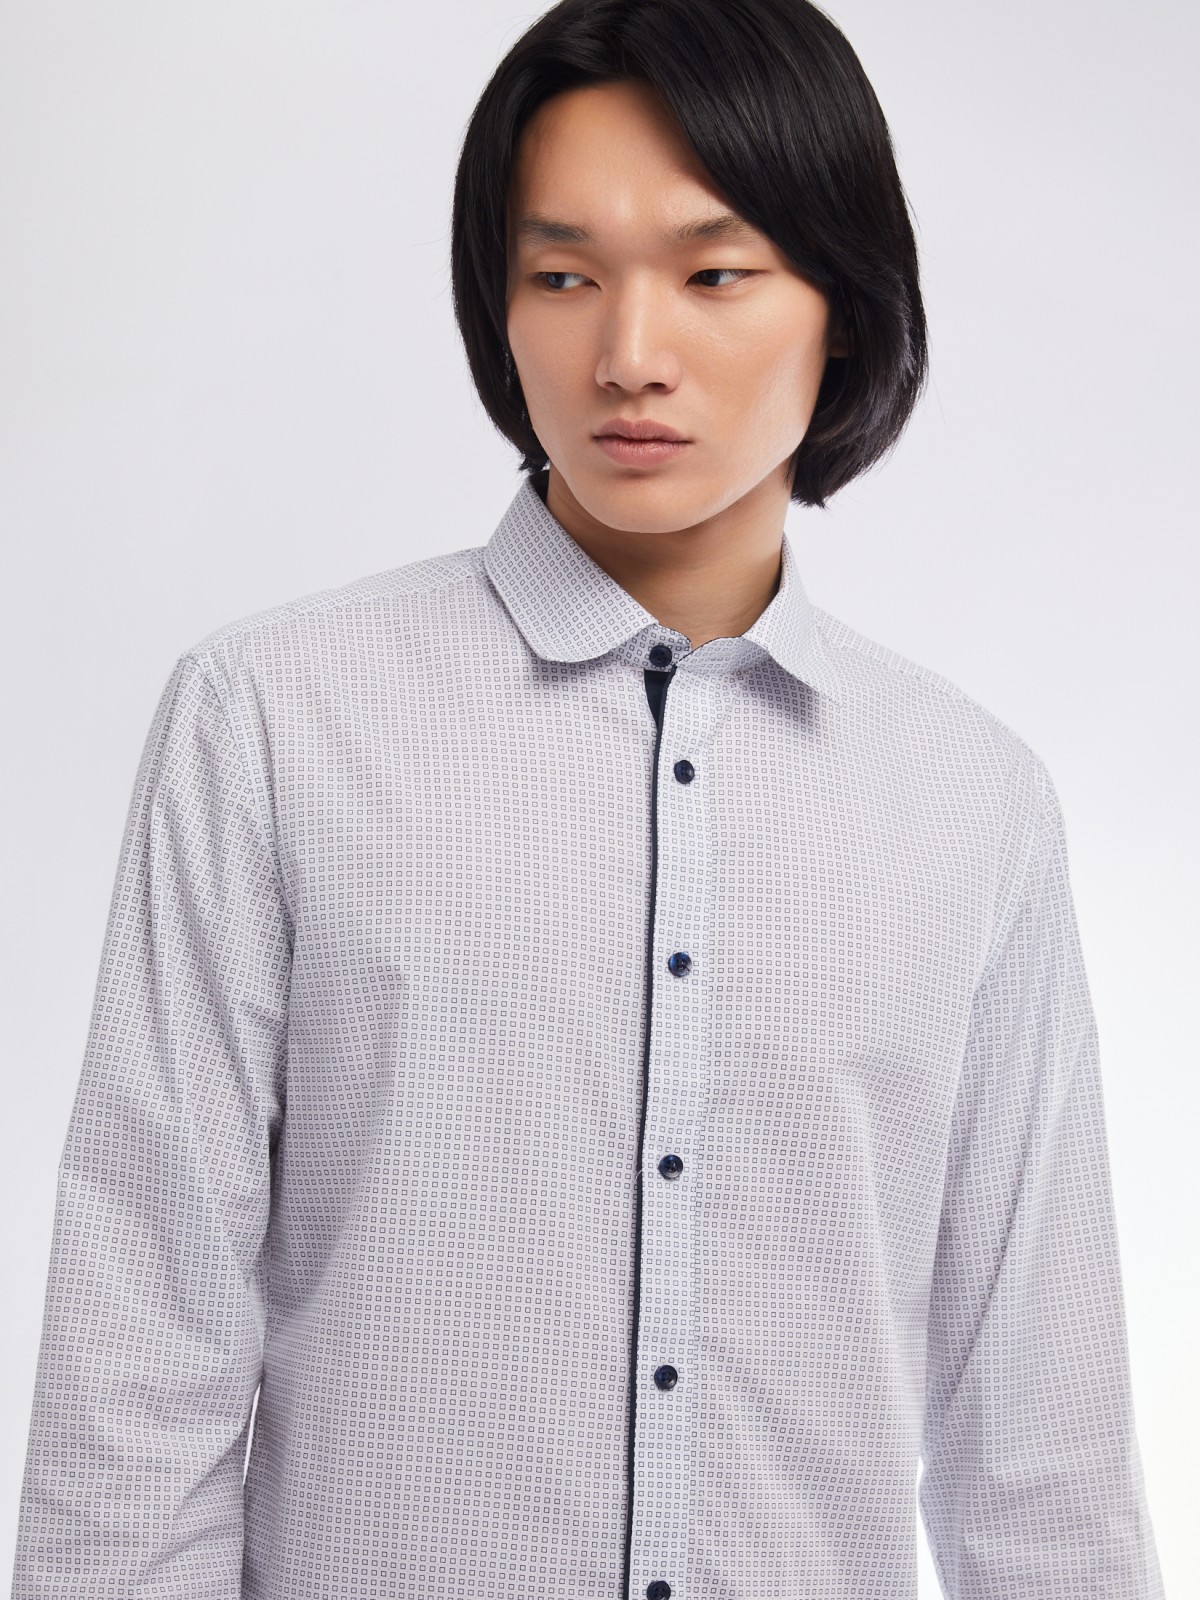 Офисная полуприталенная рубашка с мелким принтом zolla 01411217Y033, цвет белый, размер M - фото 4